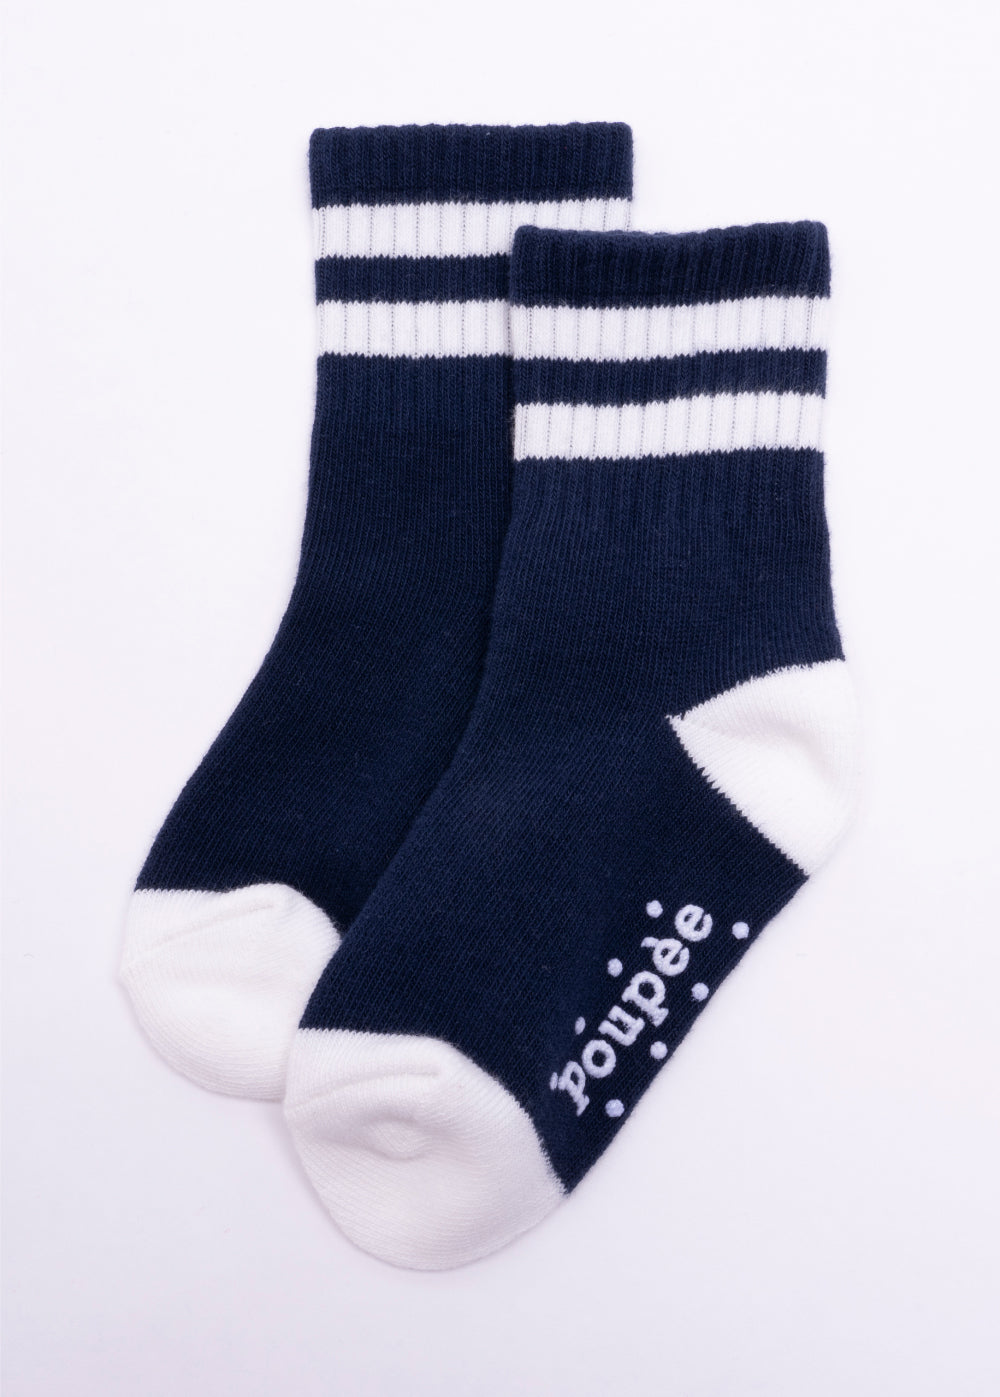 Boy Socks / 한국산 아동 양말 5종 세트 (3~10세)